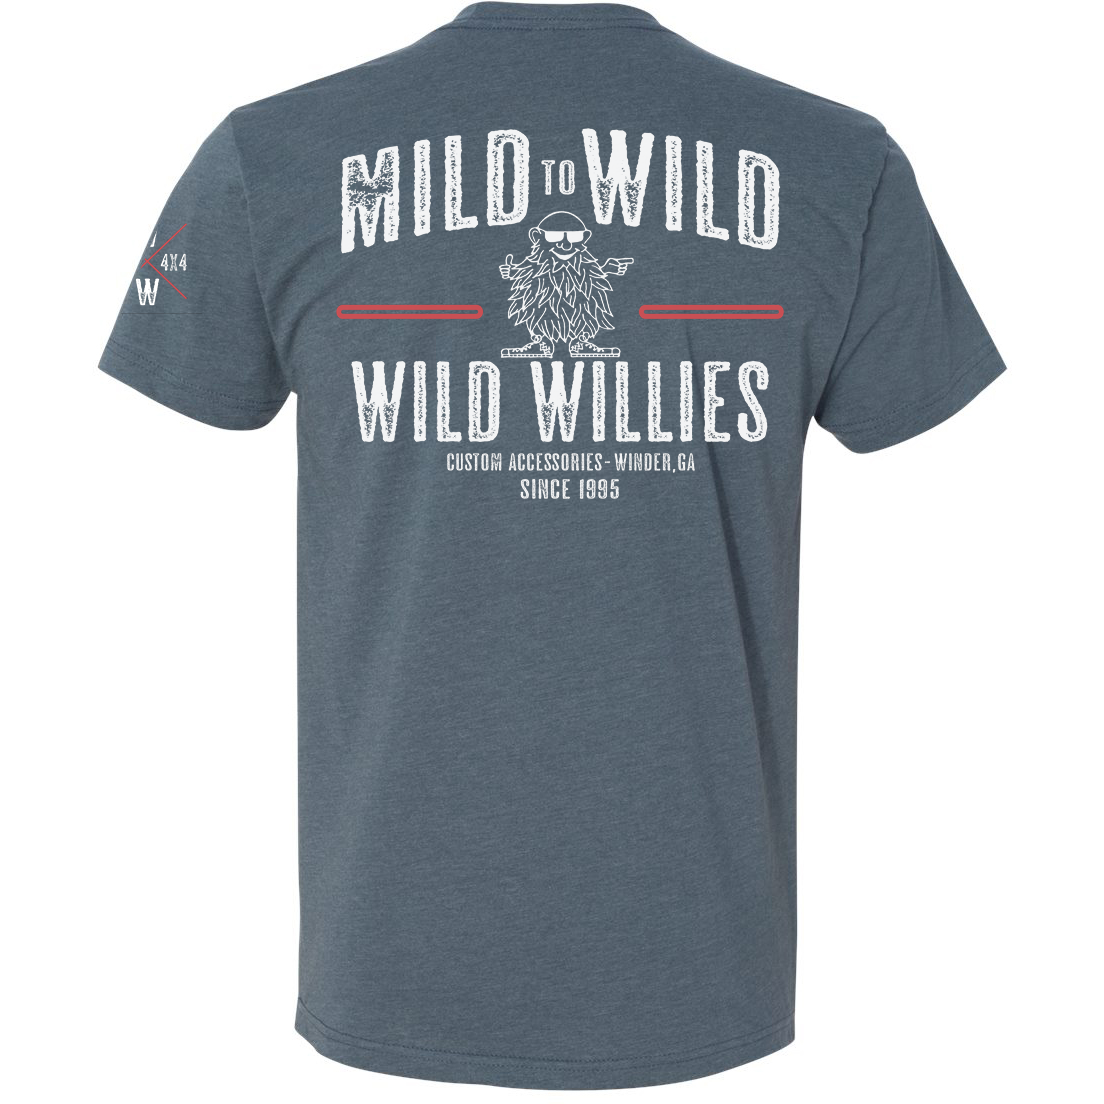 Wild Willie's Mild to Wild SS Tee